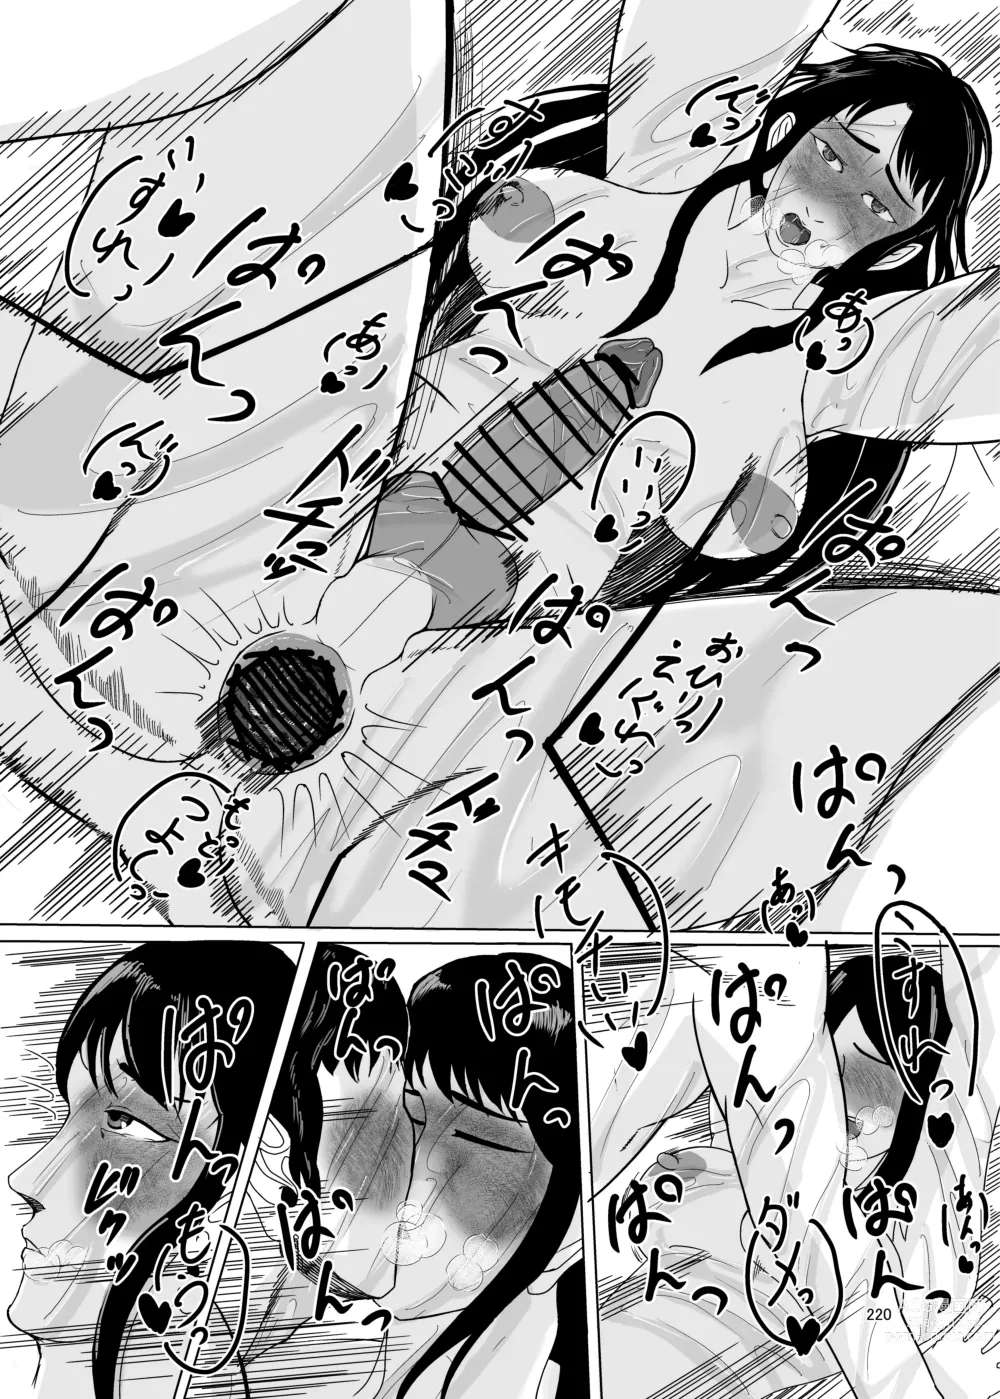 Page 220 of doujinshi Shemale & Mesu Danshi Goudoushi Cs HAVEN 3 Rod